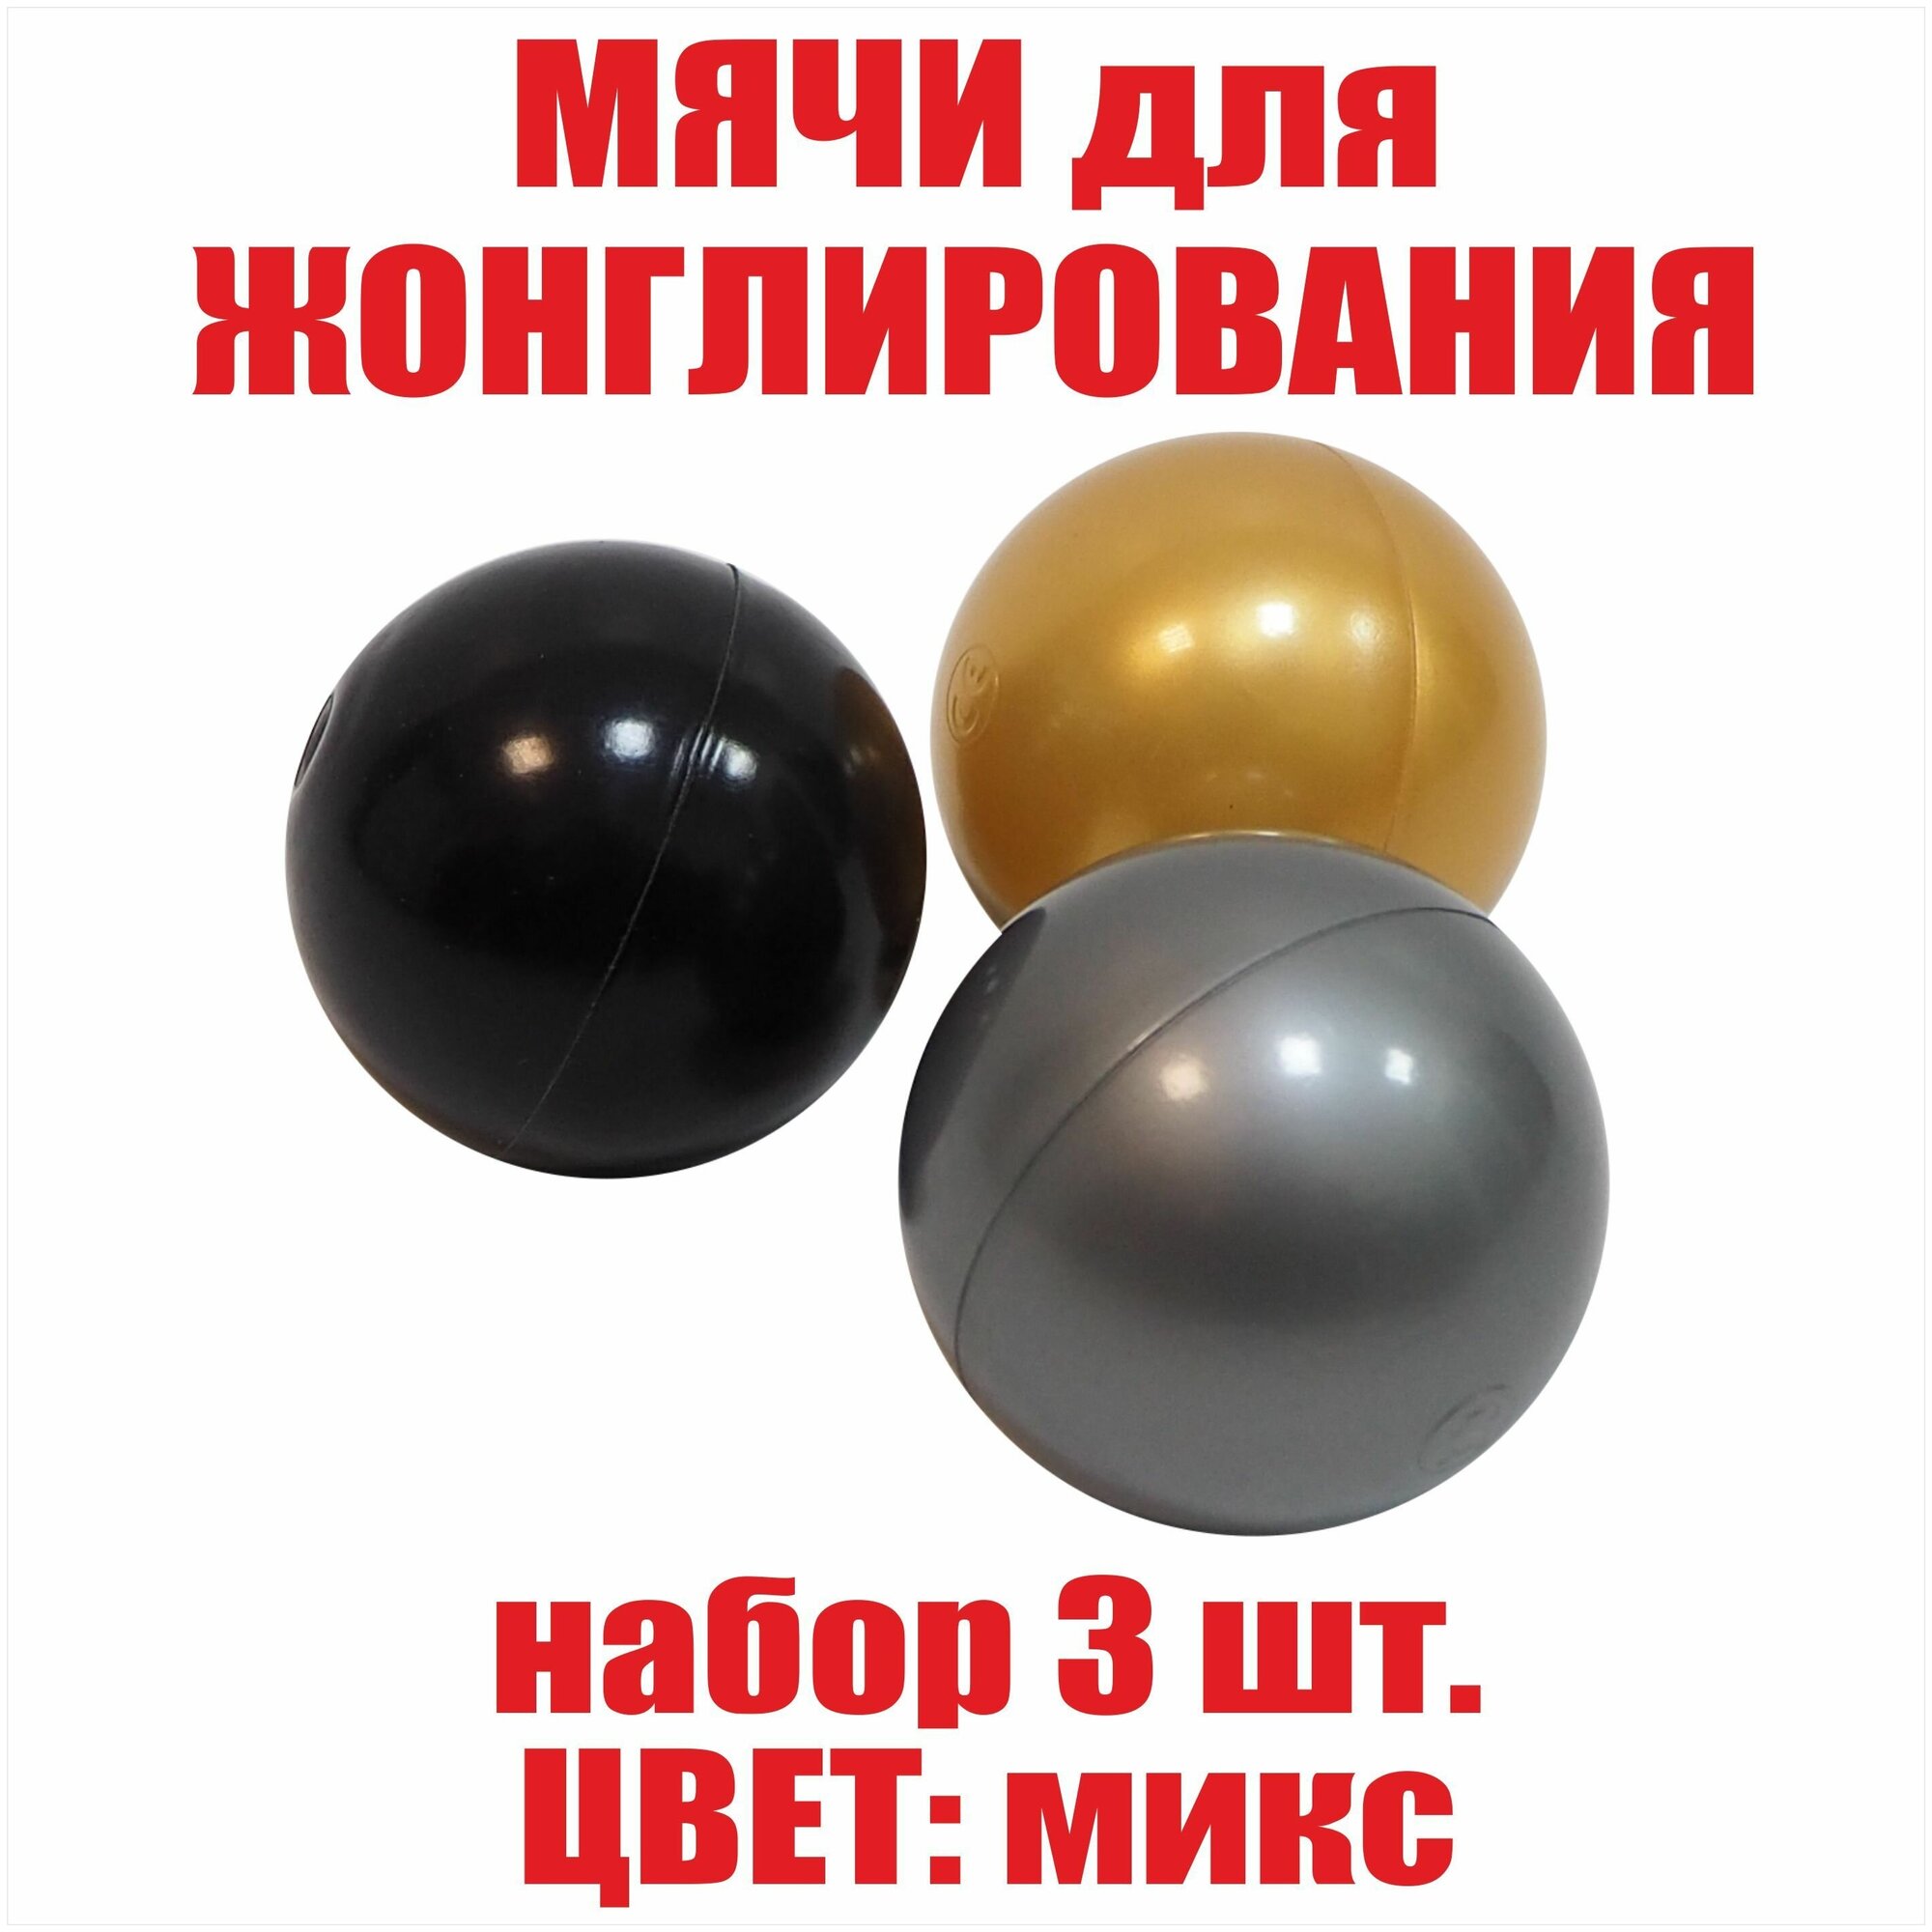 Мячи для жонглирования и спорта. Яркие шары, набор 3 шт. Развитие моторики у детей.